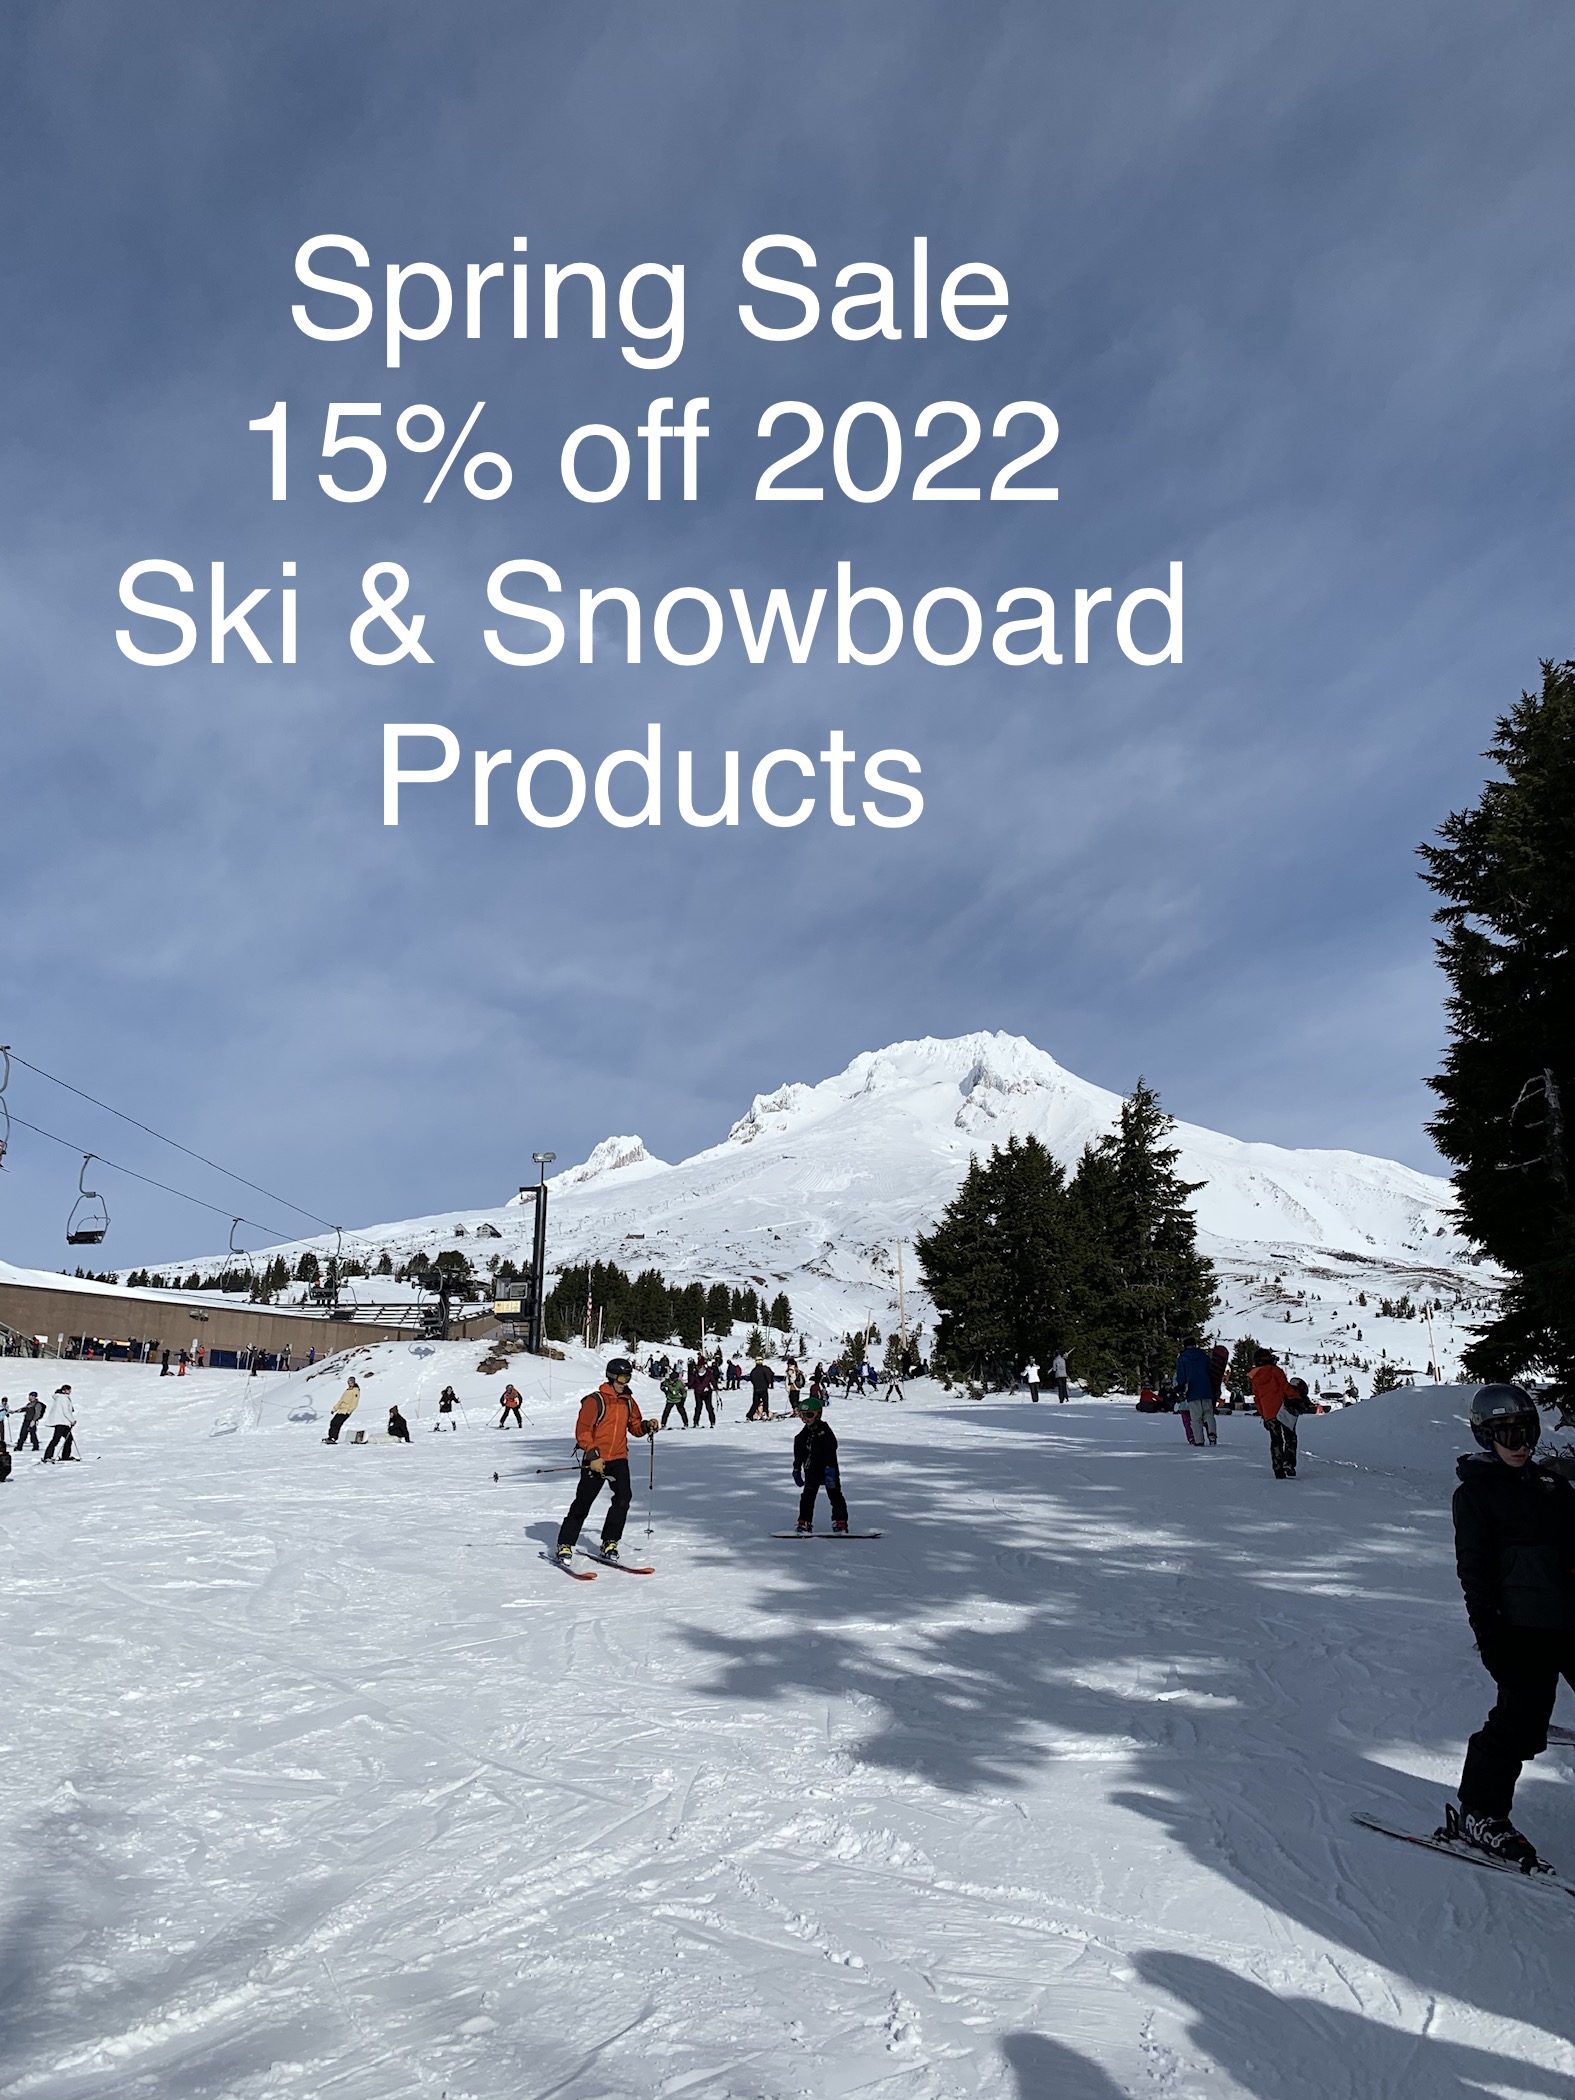 Hillcrest Ski & Sports Skiing Equipment | Buy Ski Poles, Snowboard, Boots, & more